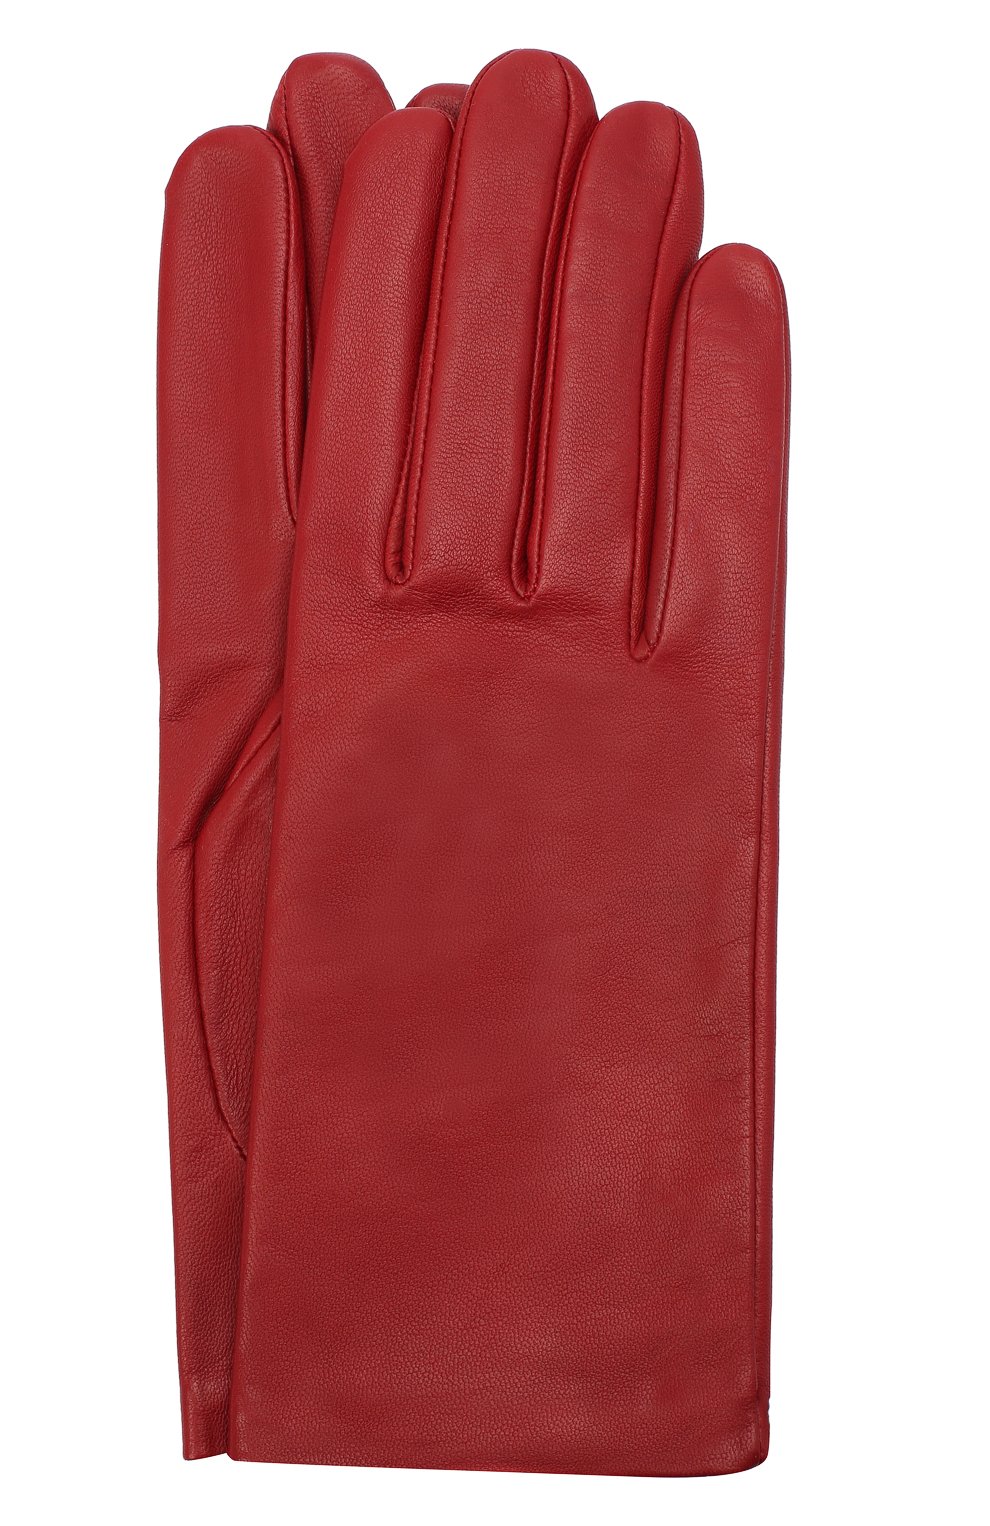 Женские кожаные перчатки с подкладкой из шелка AGNELLE красного цвета, арт. KATE/S | Фото 1 (Материал: Натуральная кожа)